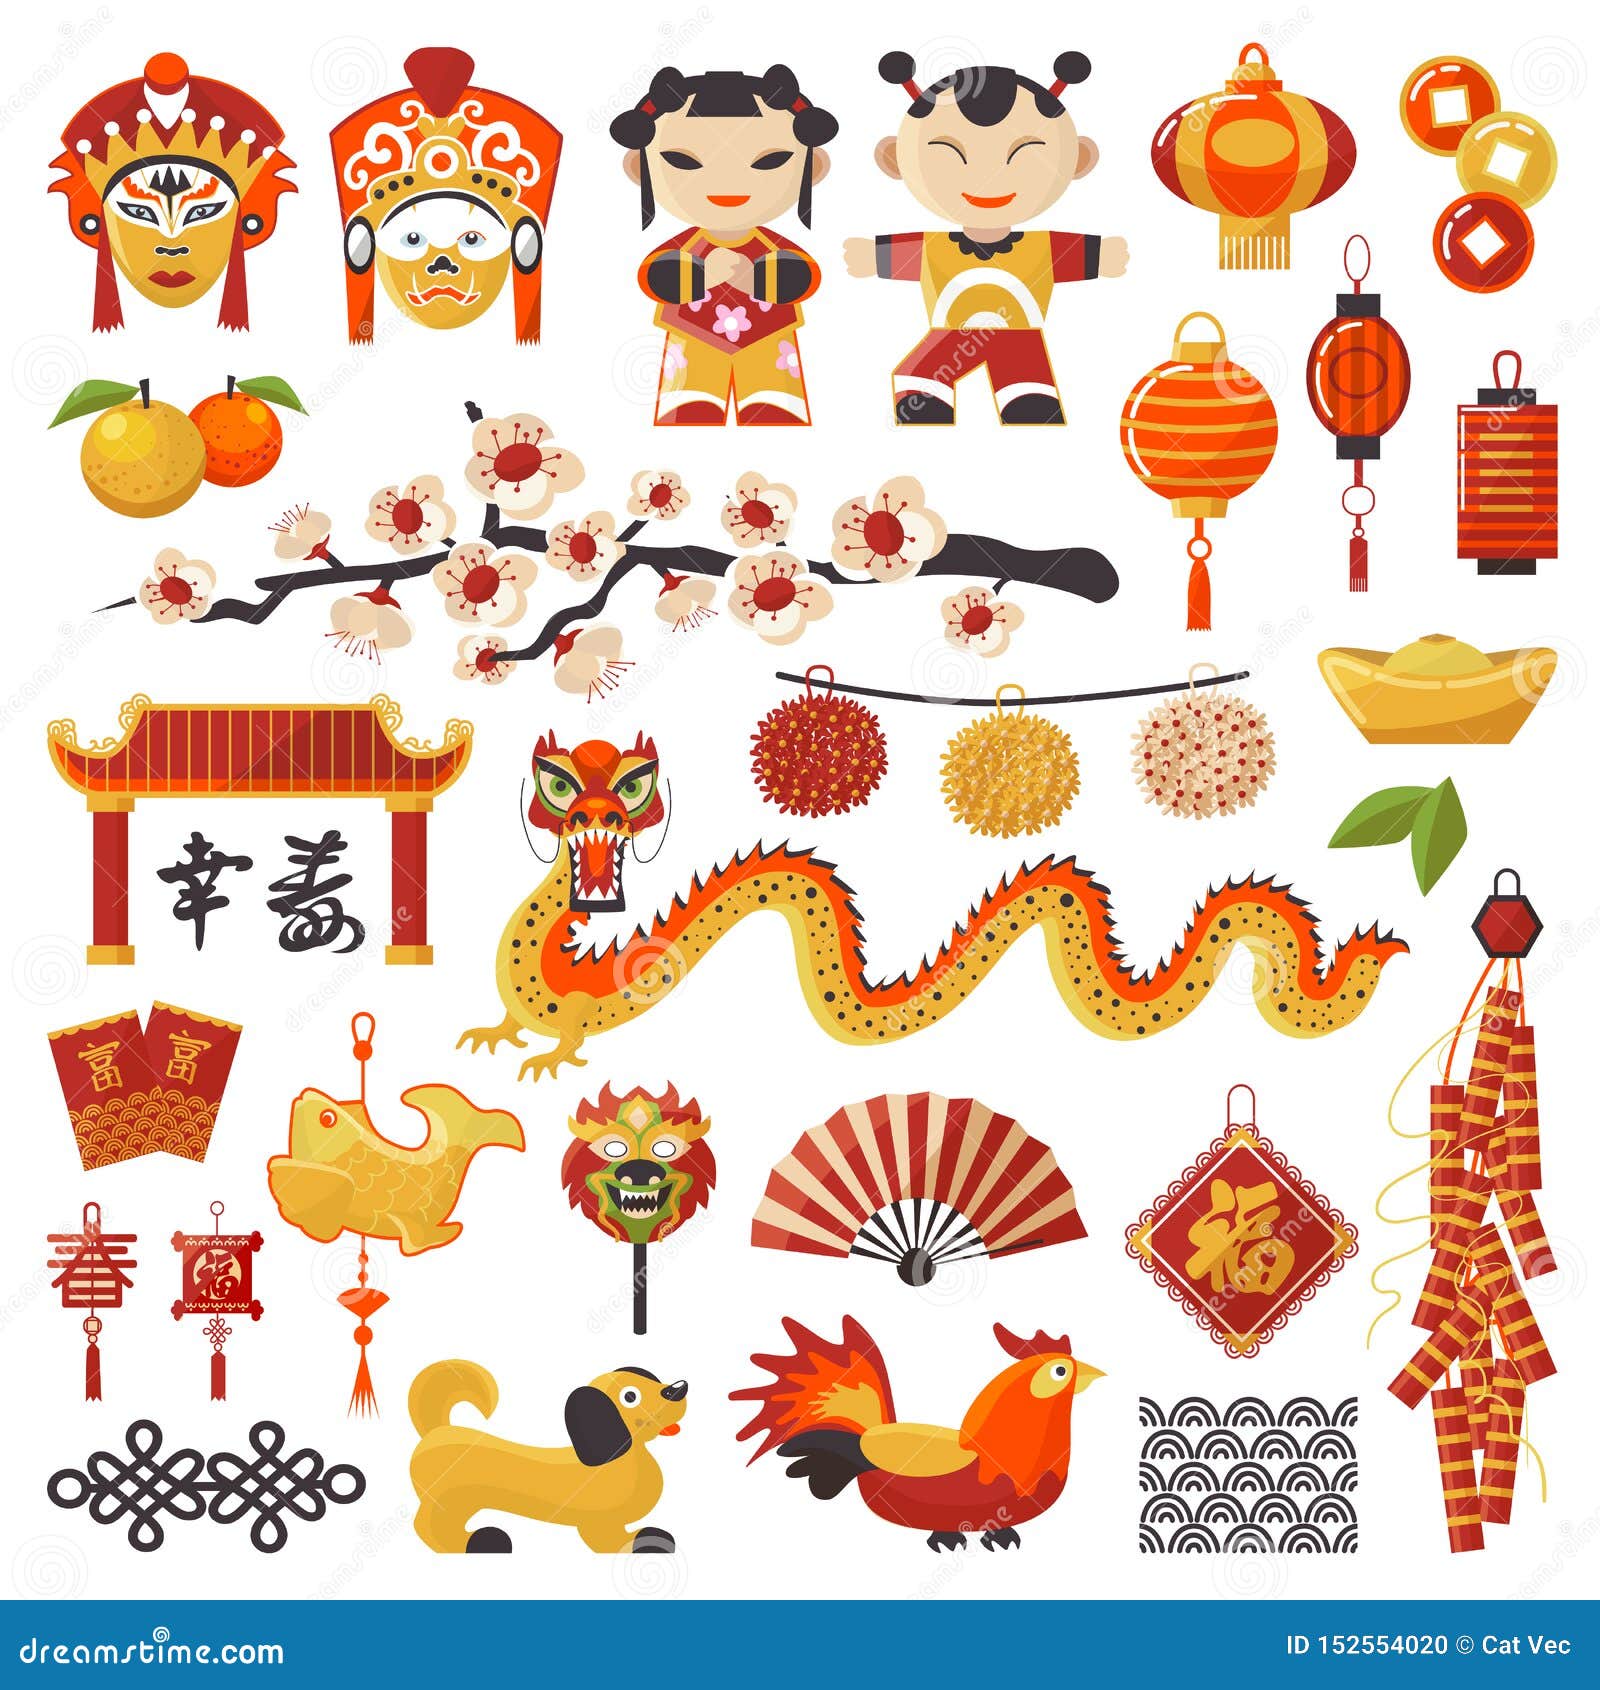 50+ Xadrez Chinês Ilustração de stock, gráficos vetoriais e